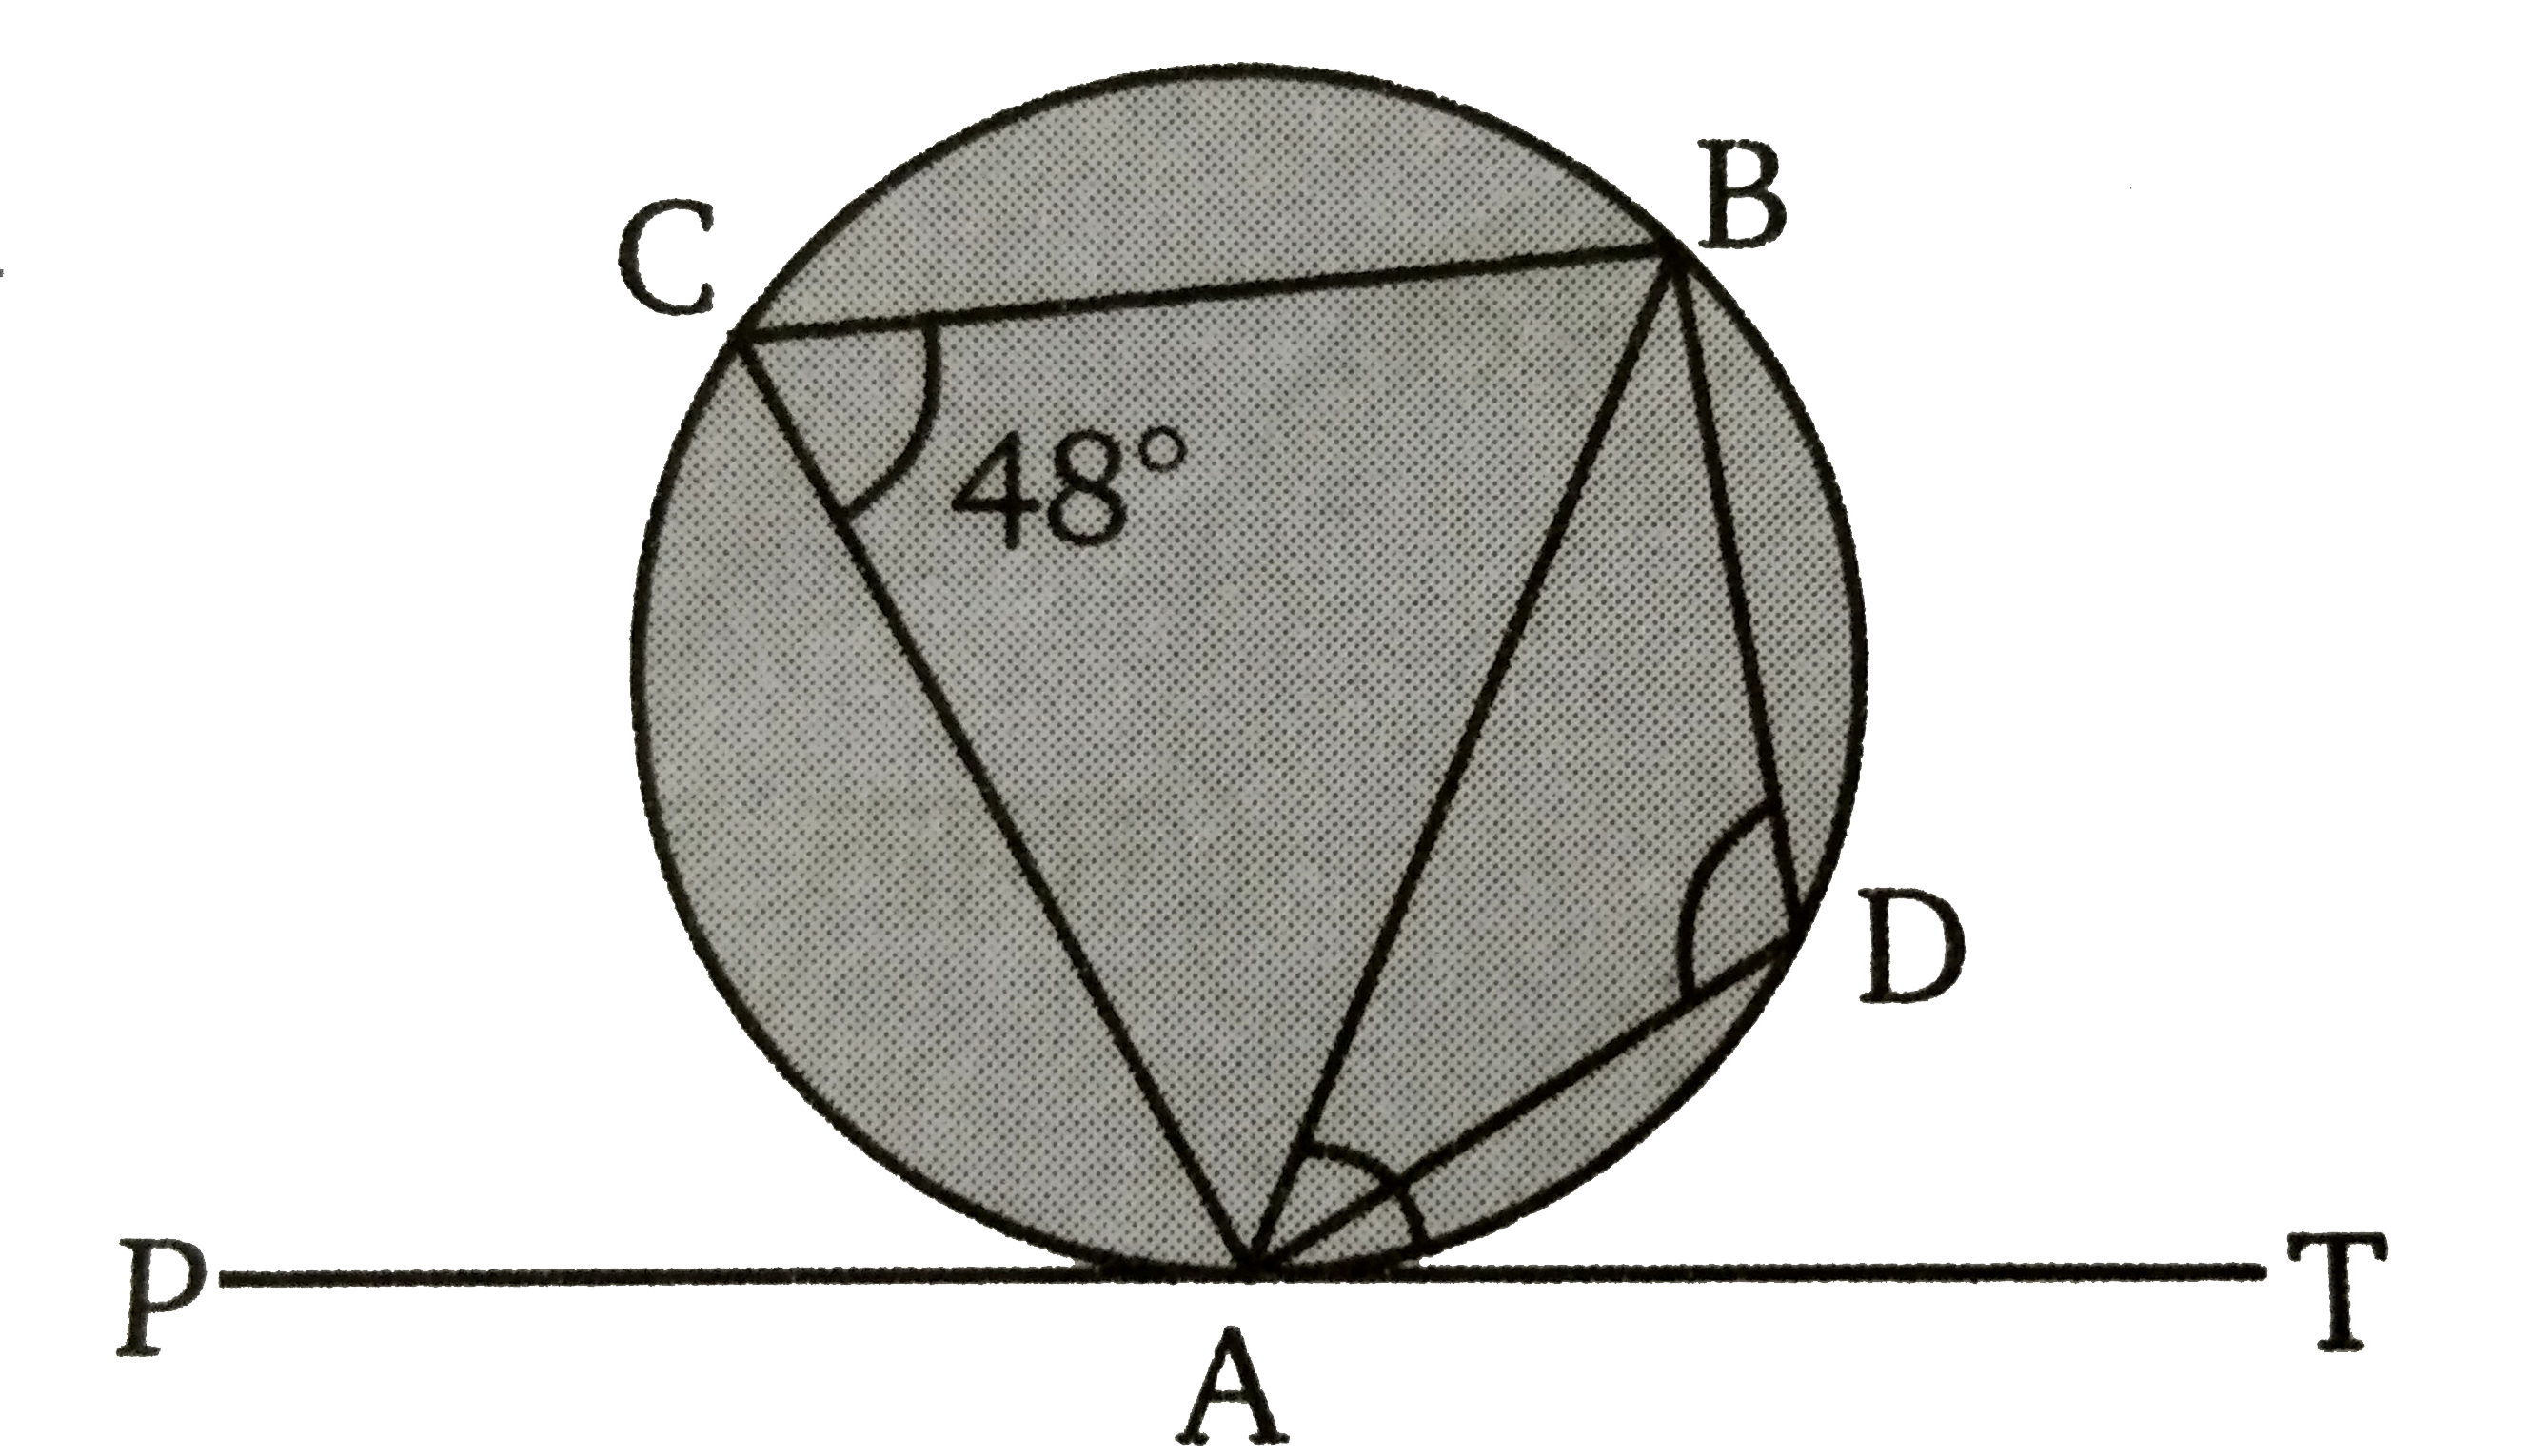 प्रस्तुत चित्र में, angle ACB = 48^(@)   तब angle TAB  व angle ADB  के मान ज्ञात कीजिए ।